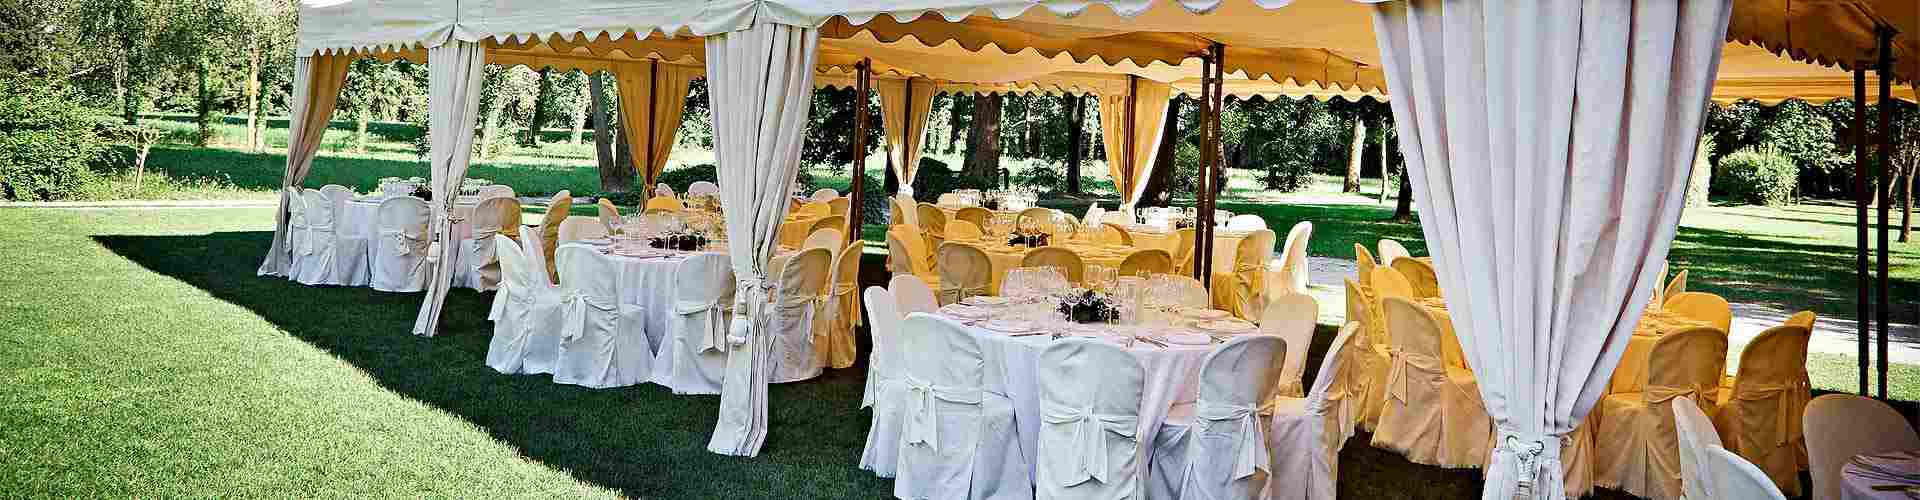 Restaurantes para bodas 2020 en Santa Colomba de Somoza